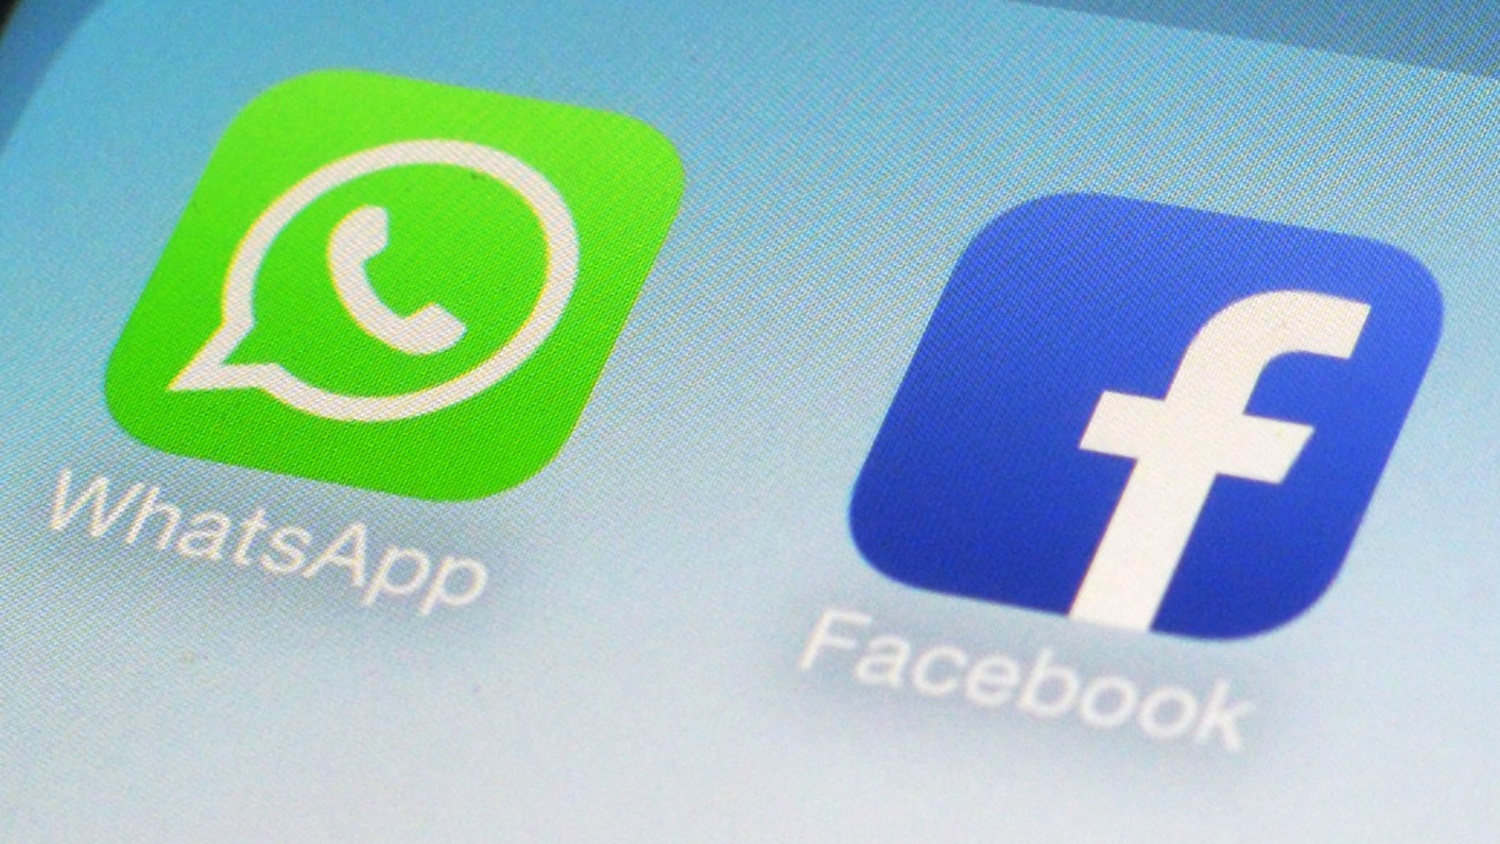 A TIM vai oferecer ligações por Messenger e WhatsApp sem gastar a franquia  de dados - Giz Brasil